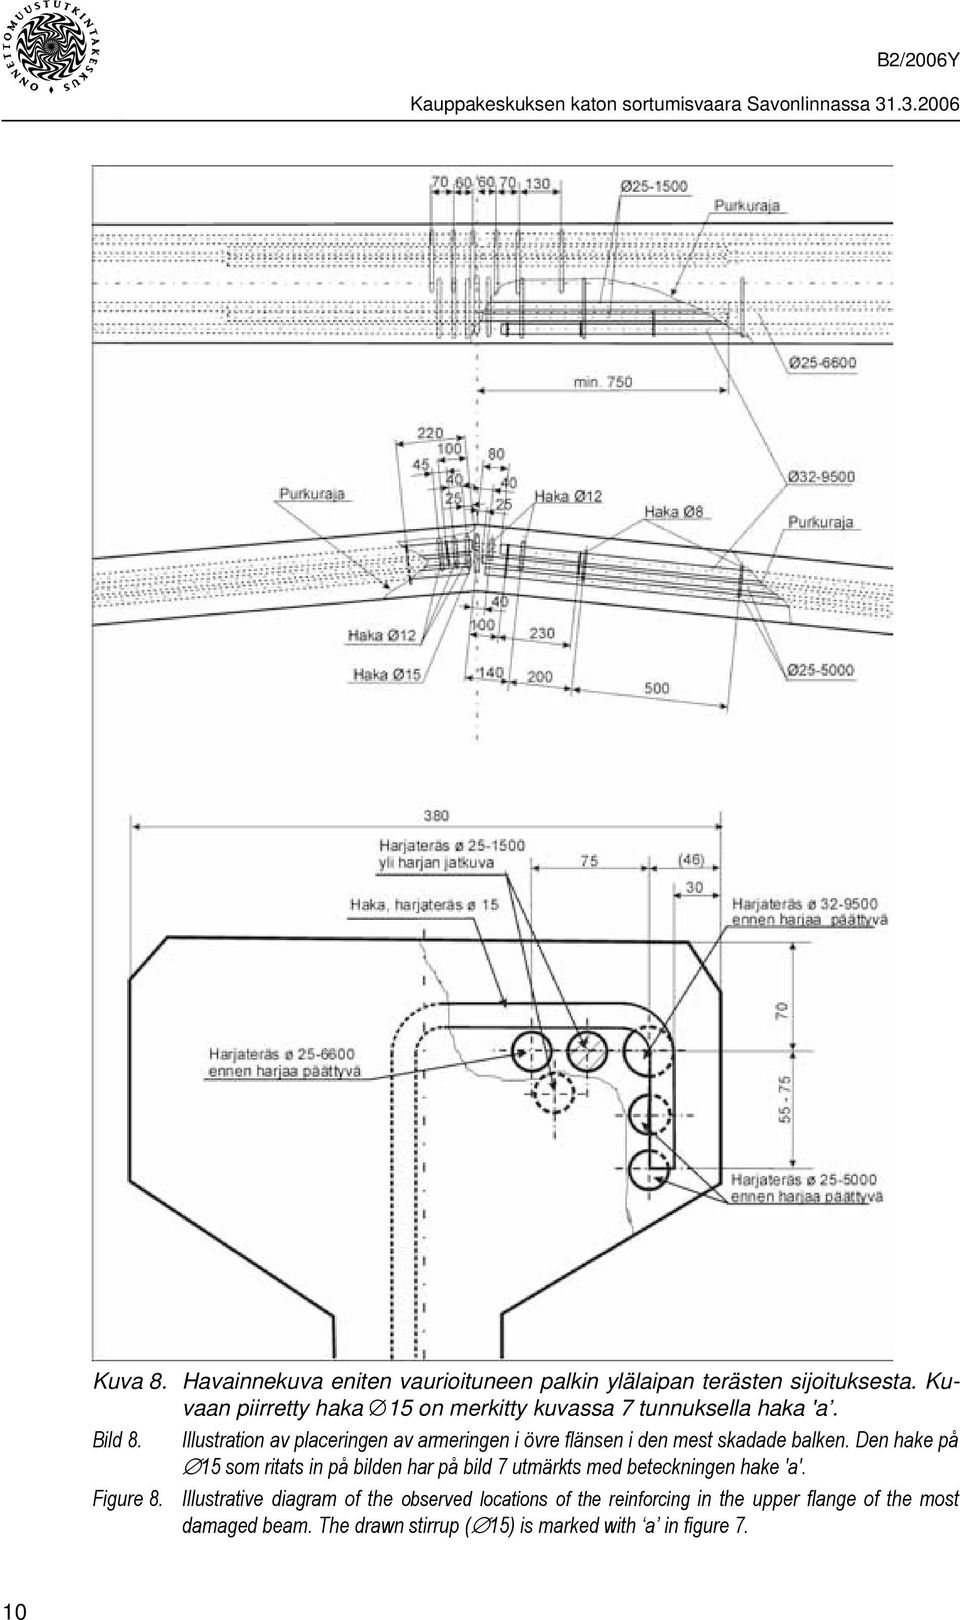 Bild 8. Illustration av placeringen av armeringen i övre flänsen i den mest skadade balken.